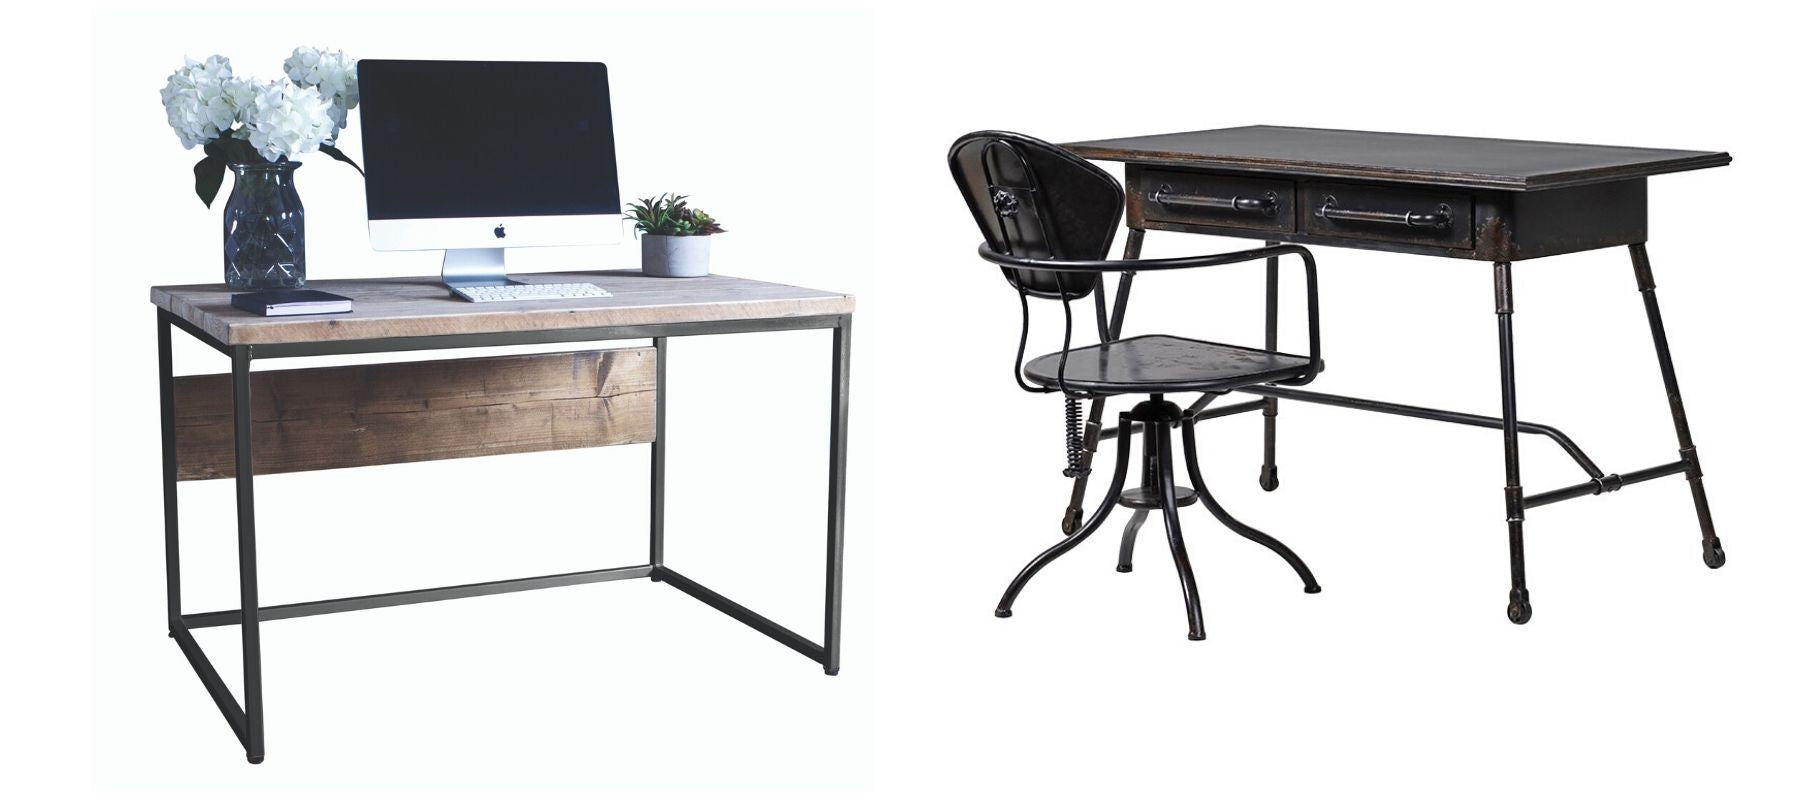 Two industrial style desks, including black metal desk